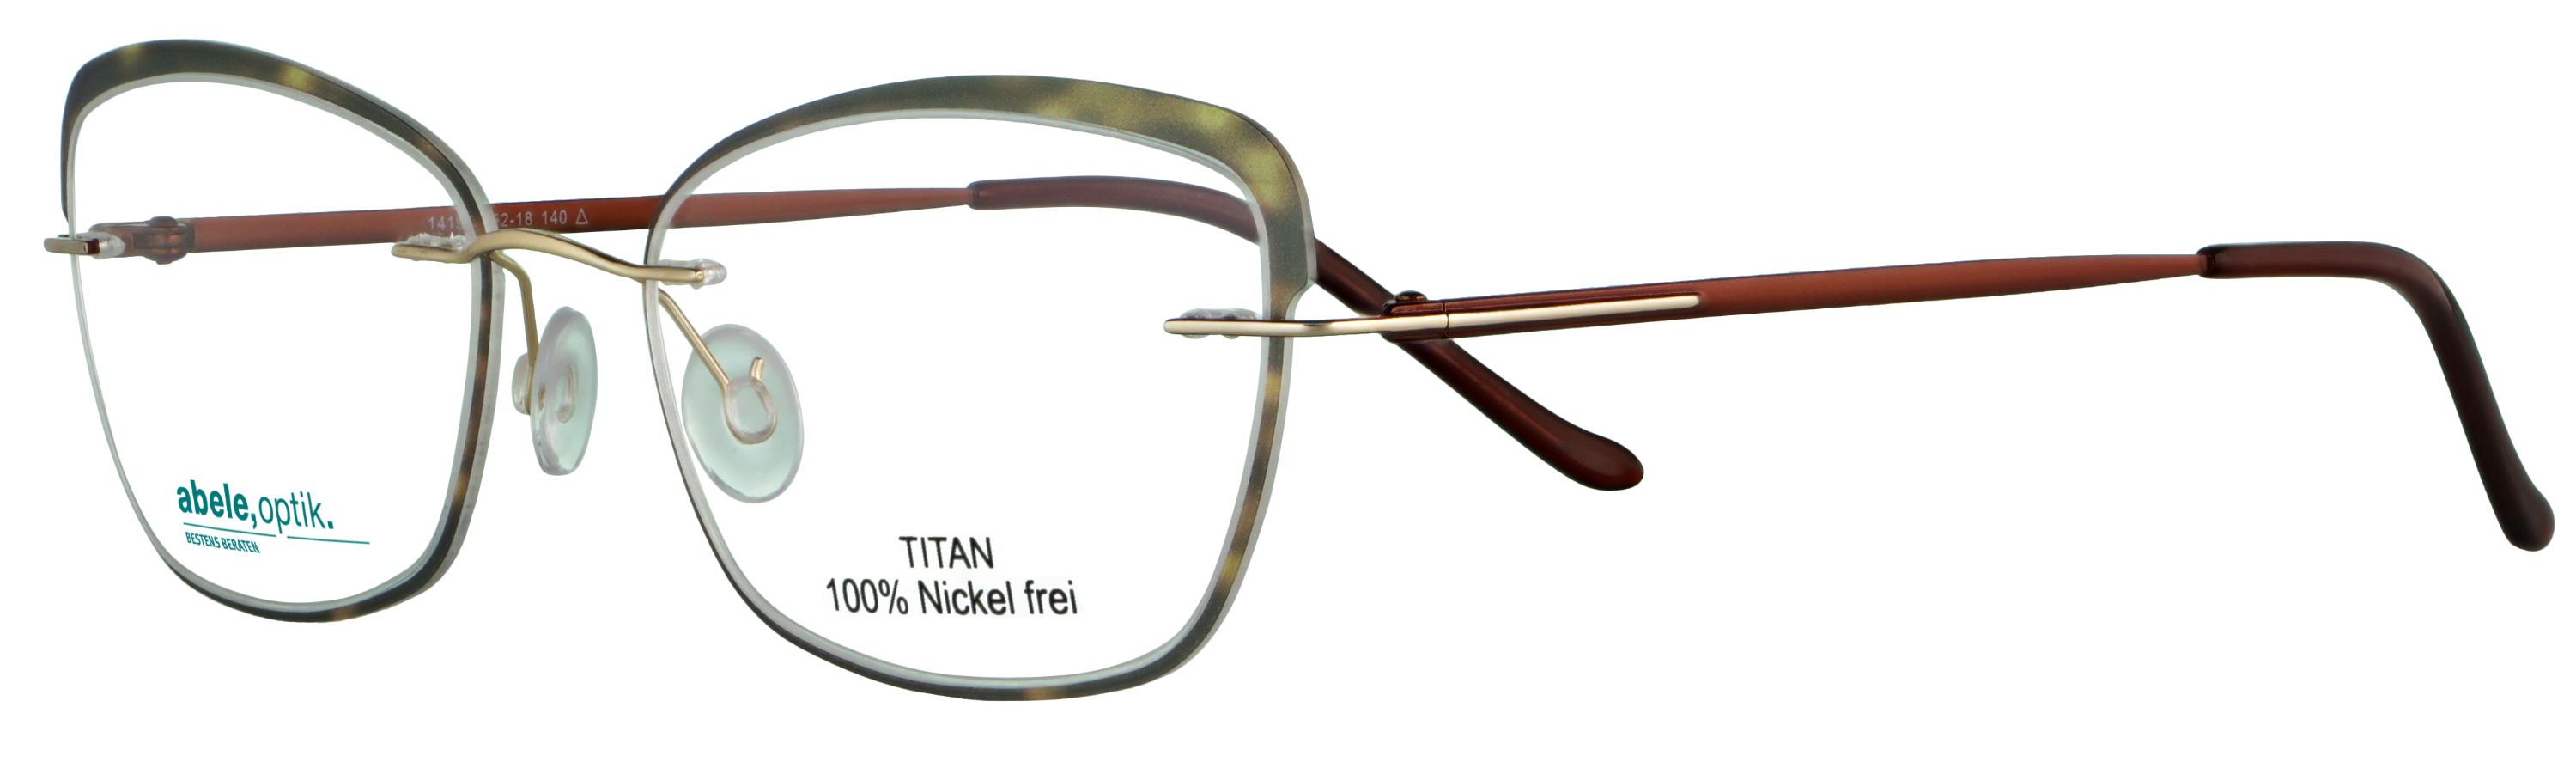 Das Bild zeigt die Korrektionsbrille 141951 von der Marke Abele Optik in braun / gold.